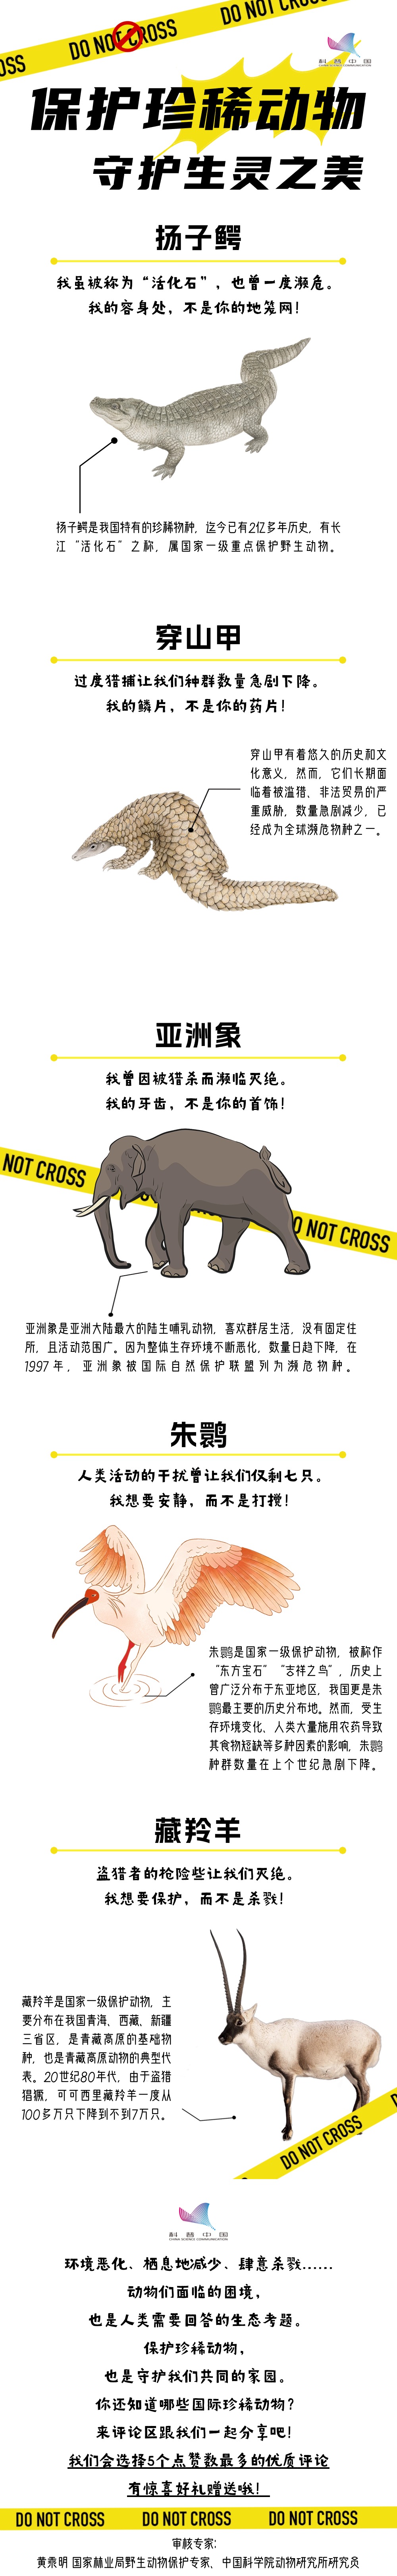 珍稀动物保护日长图.jpg